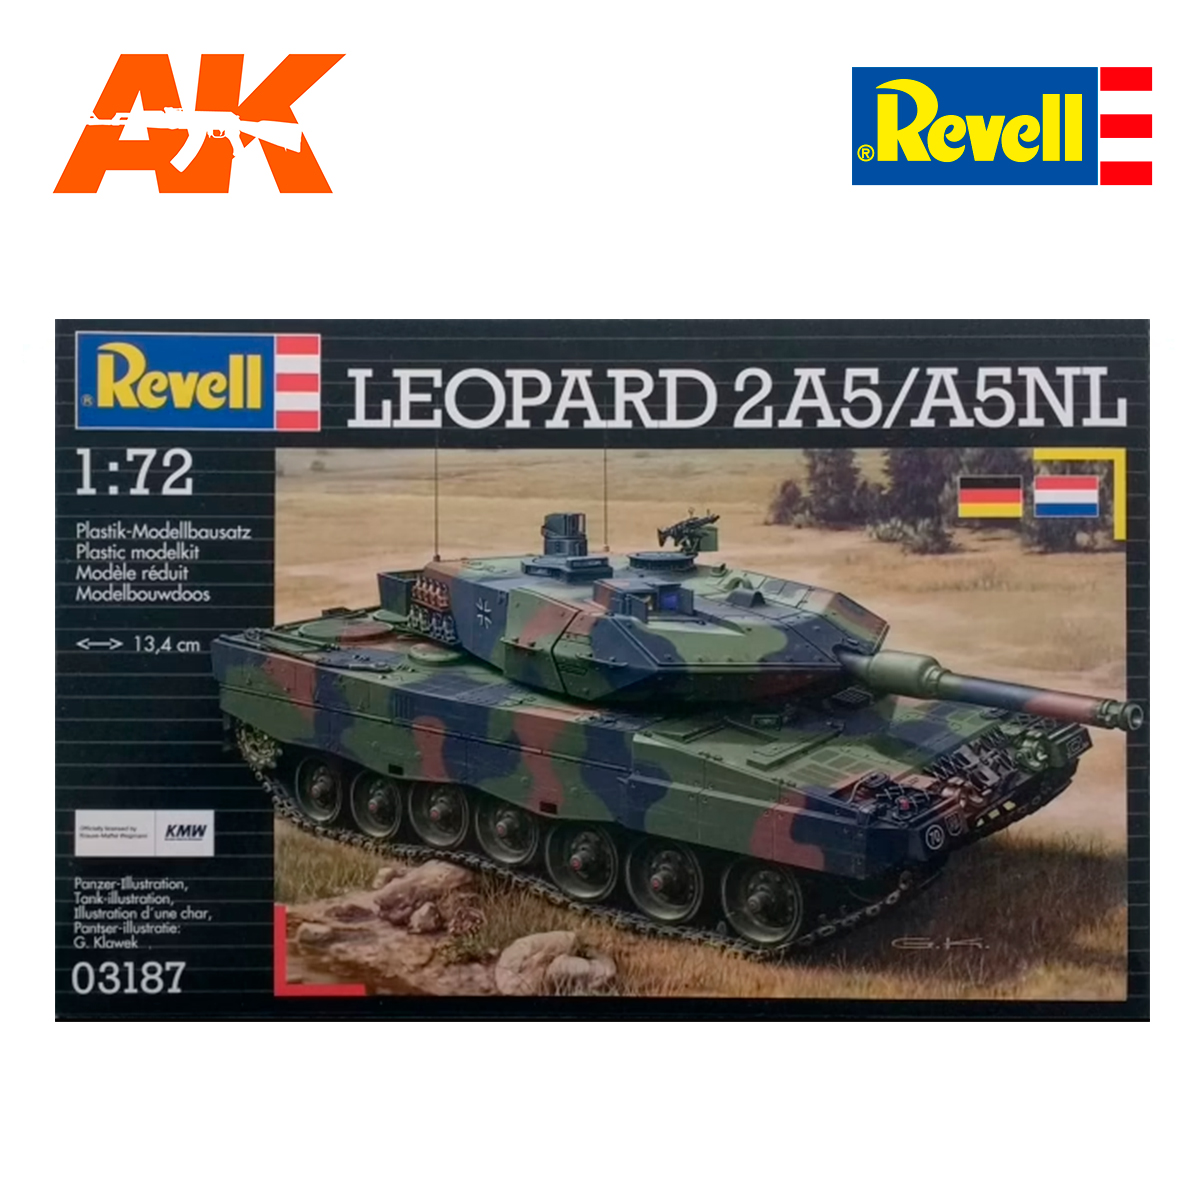 Leopard 2 A5/A5 NL 1/72